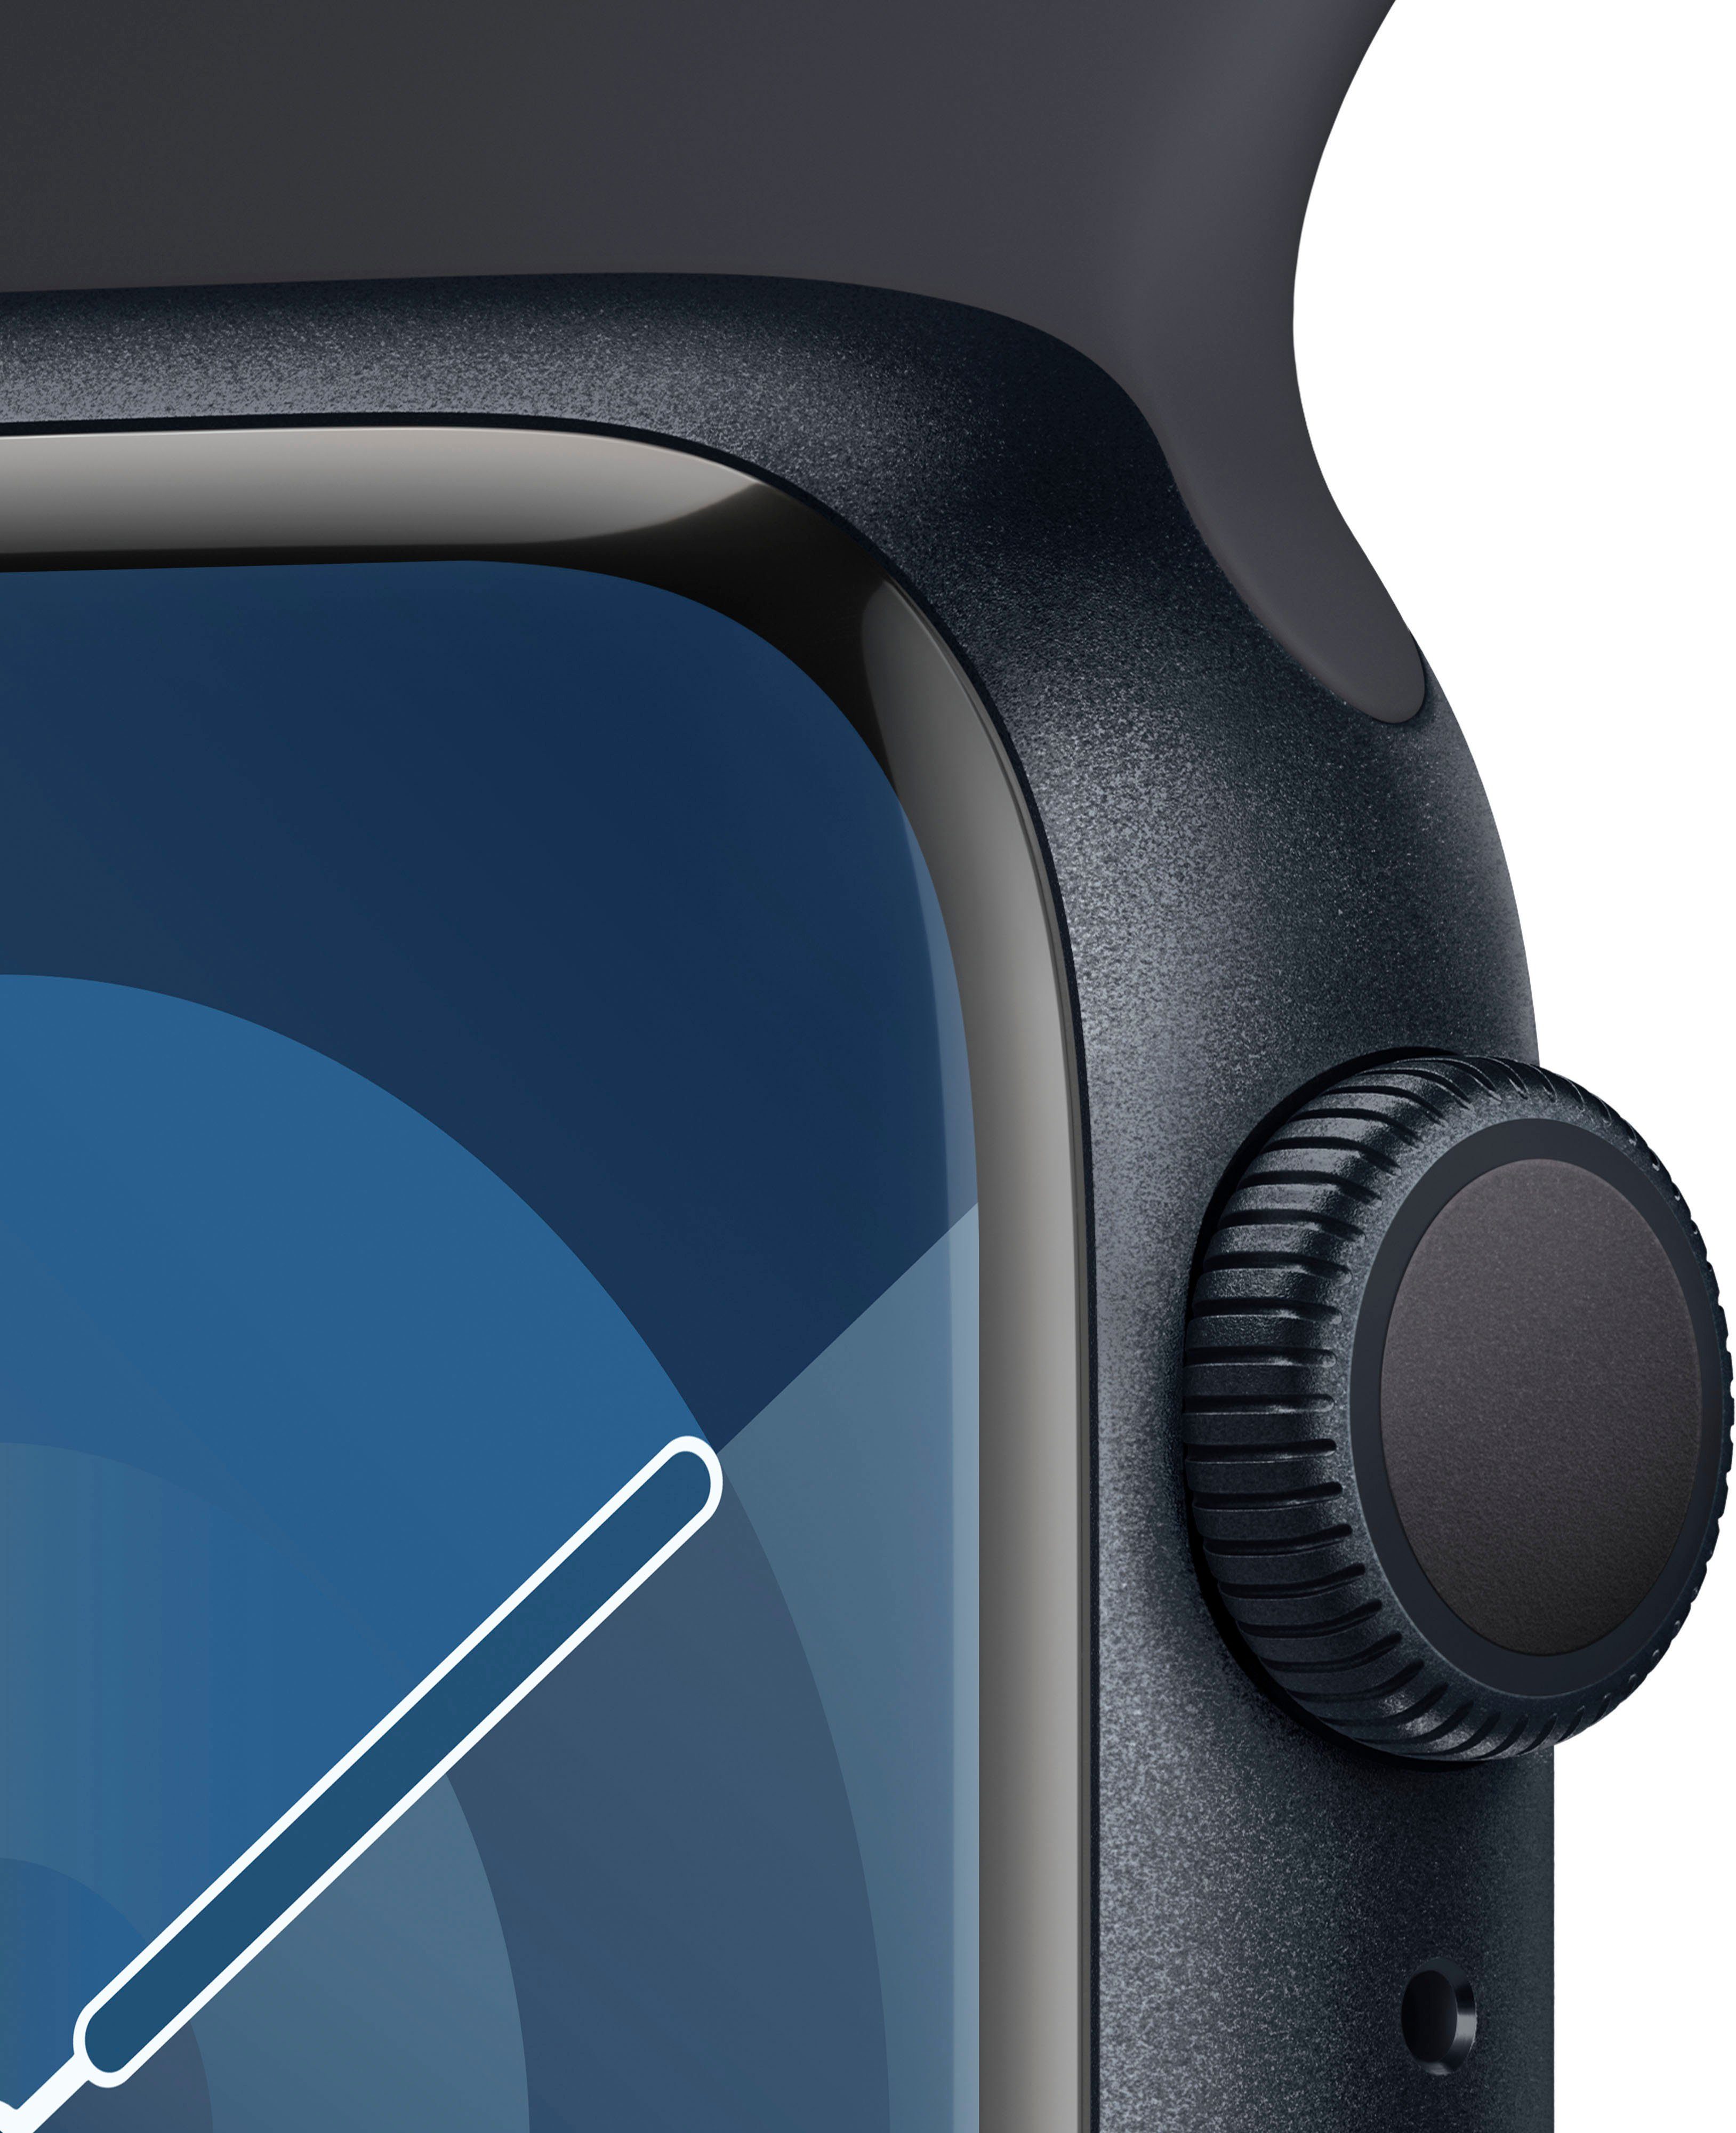 Apple Watch Series 10), cm/1,69 Smartwatch Aluminium Sport Watch GPS Mitternacht M/L 9 Zoll, Mitternacht OS Band 41mm | (4,1